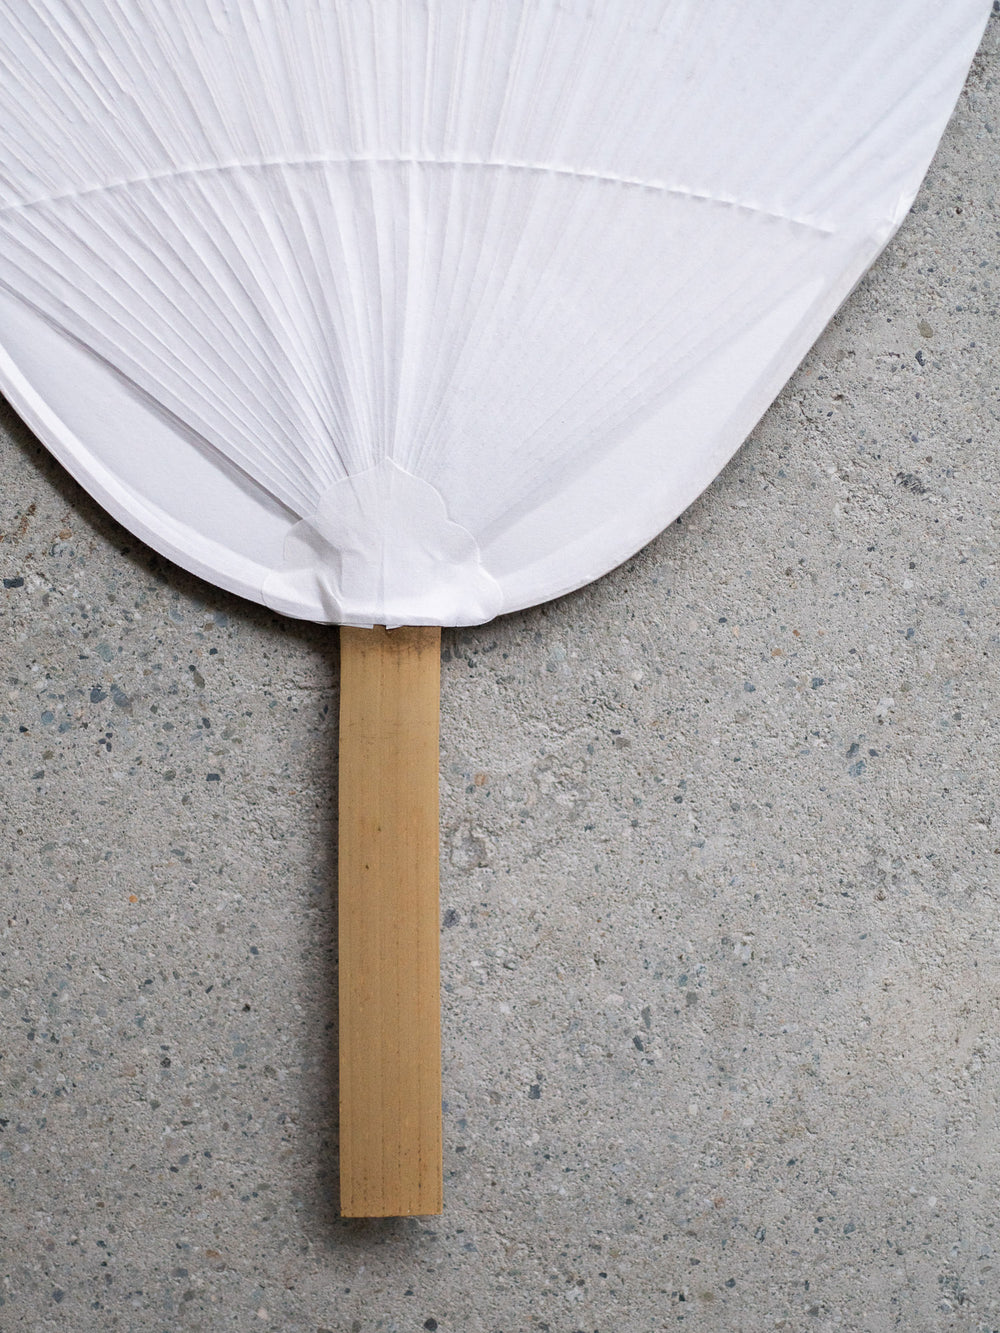 White Paper Paddle Fan